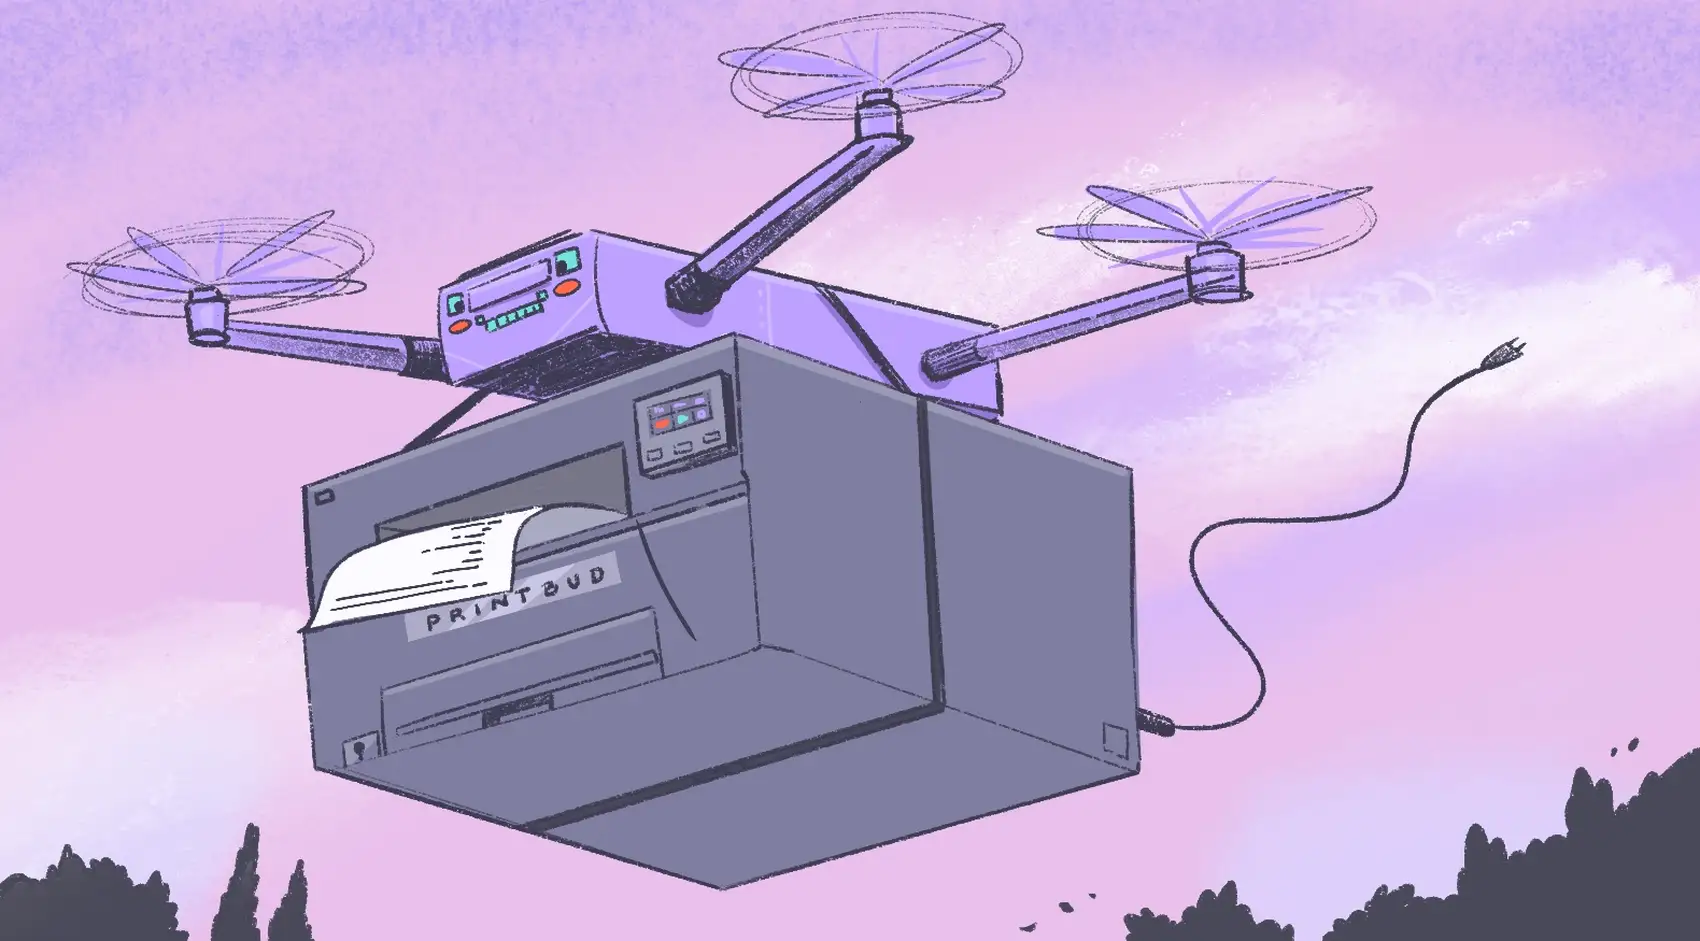 A drone delivering a printer